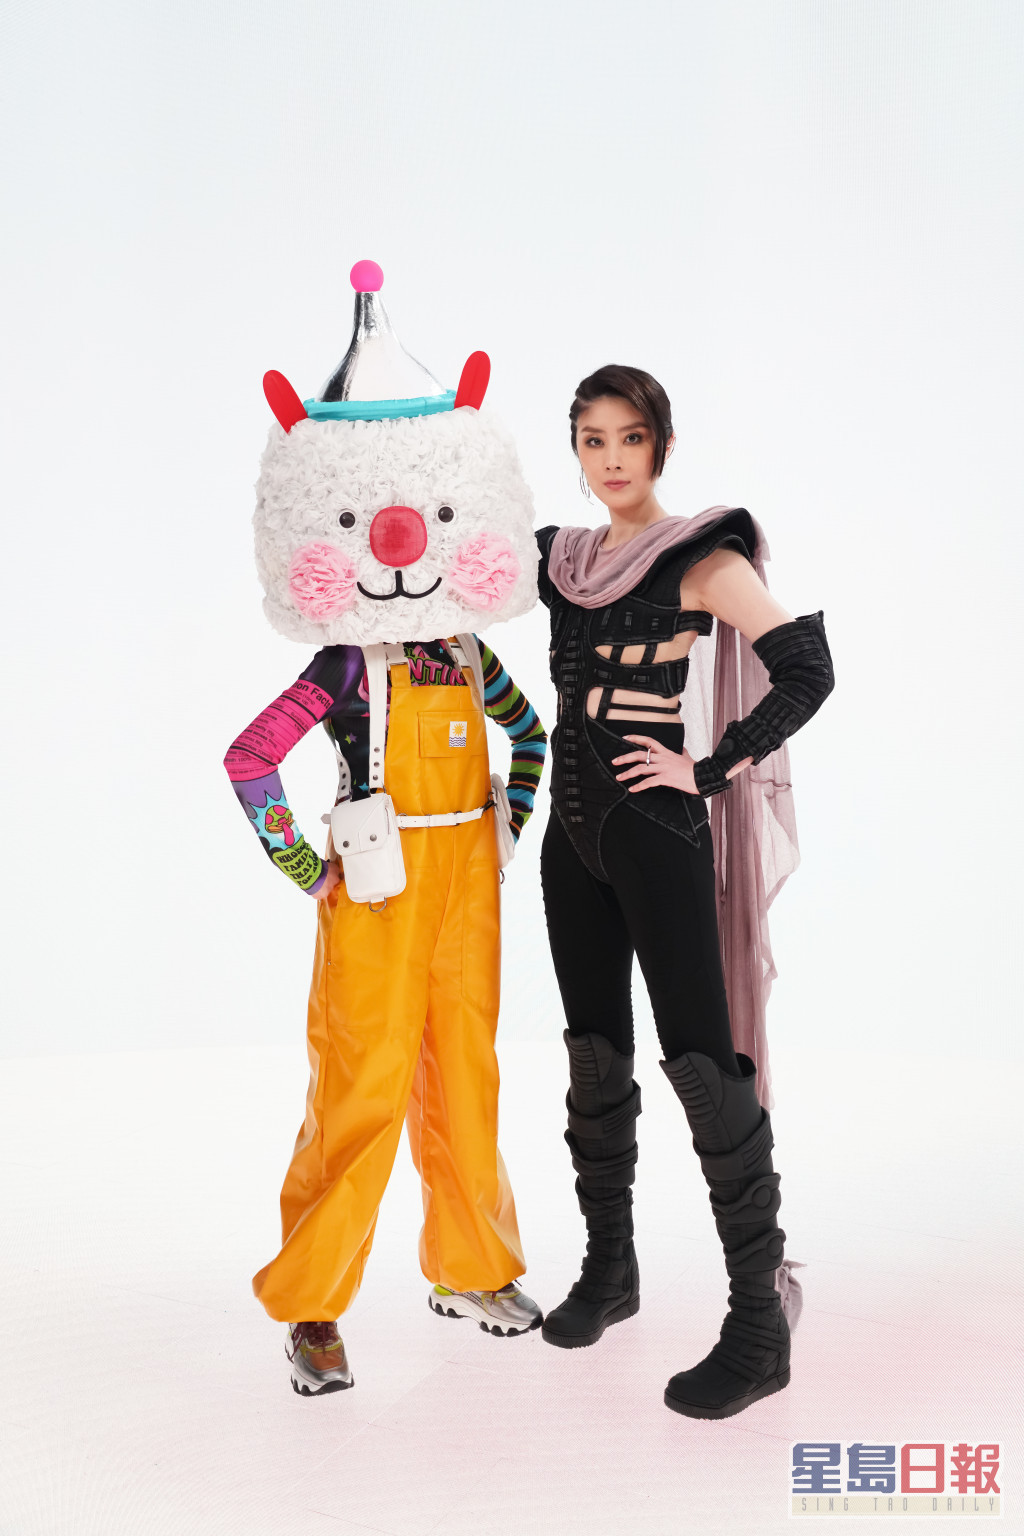 新歌MV中陈慧琳跟星星兔喺太空飞行游走宇宙。